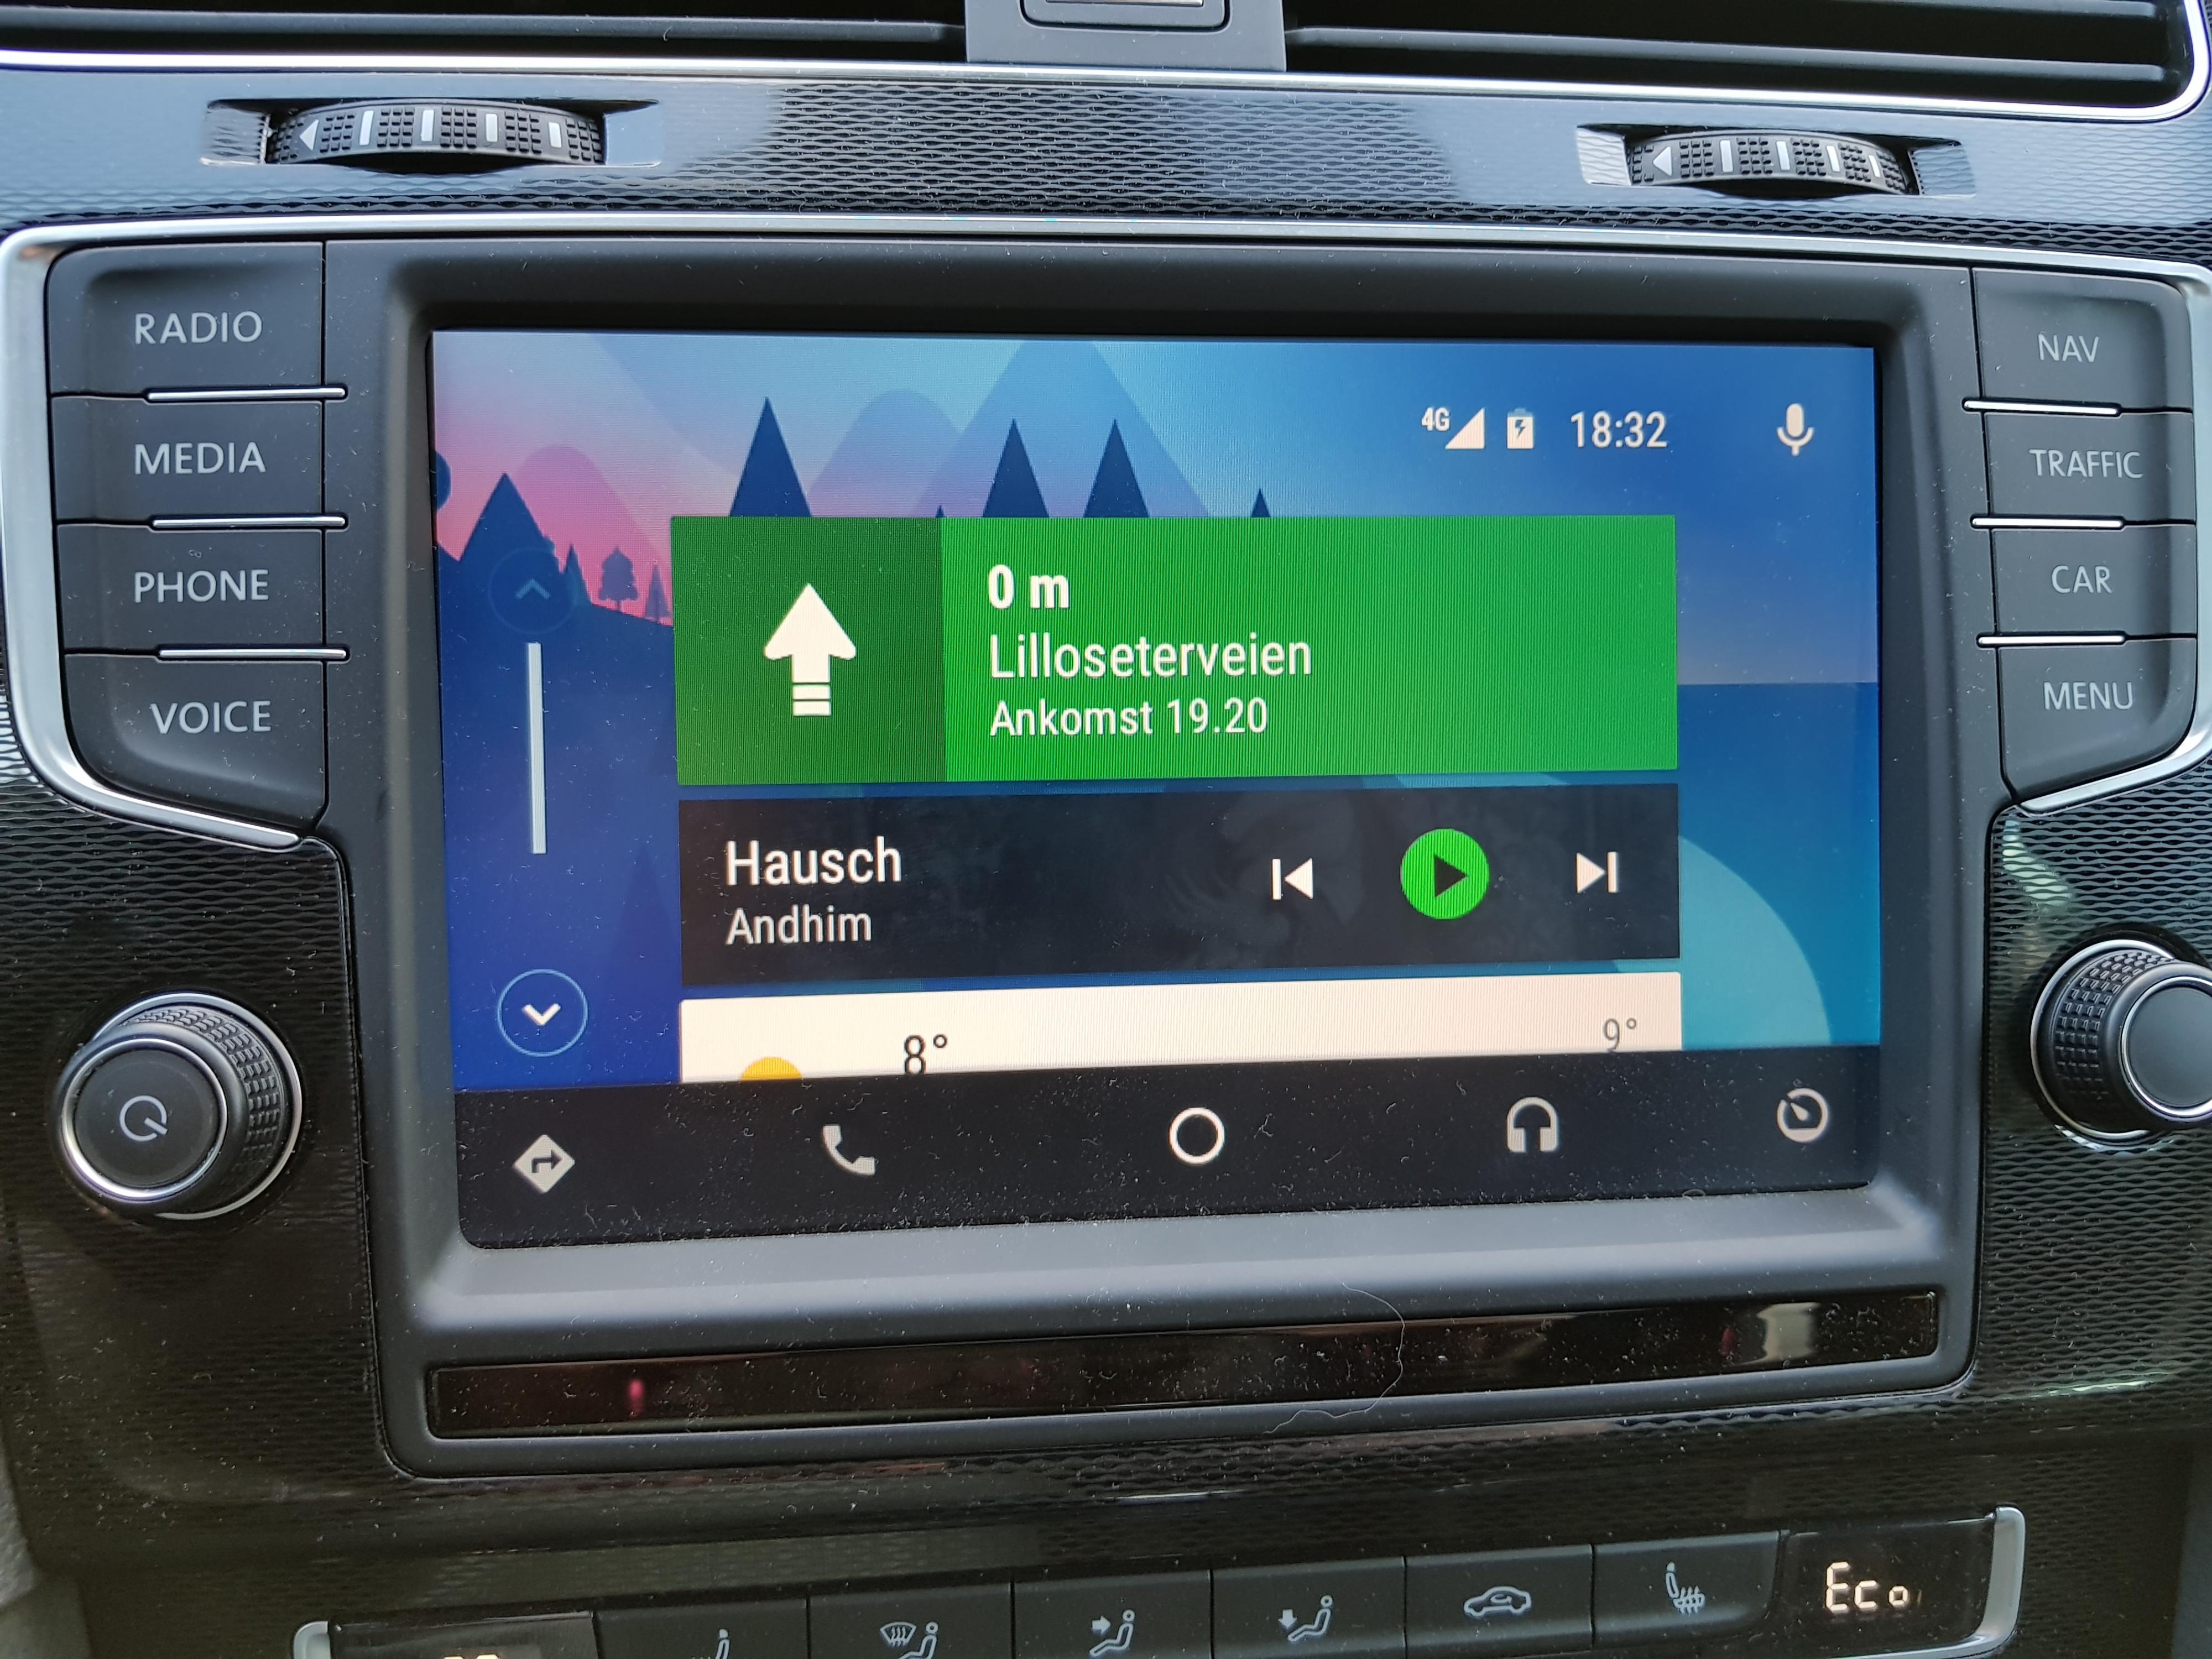 Hjemmeskjermen for Android Auto viser løpende gjøremål, og forslag til nye steder, samt litt grunnleggende informasjon om varslinger og vær. Men noen ren appmeny har du ikke her. Bilde: Finn Jarle Kvalheim, Tek.no